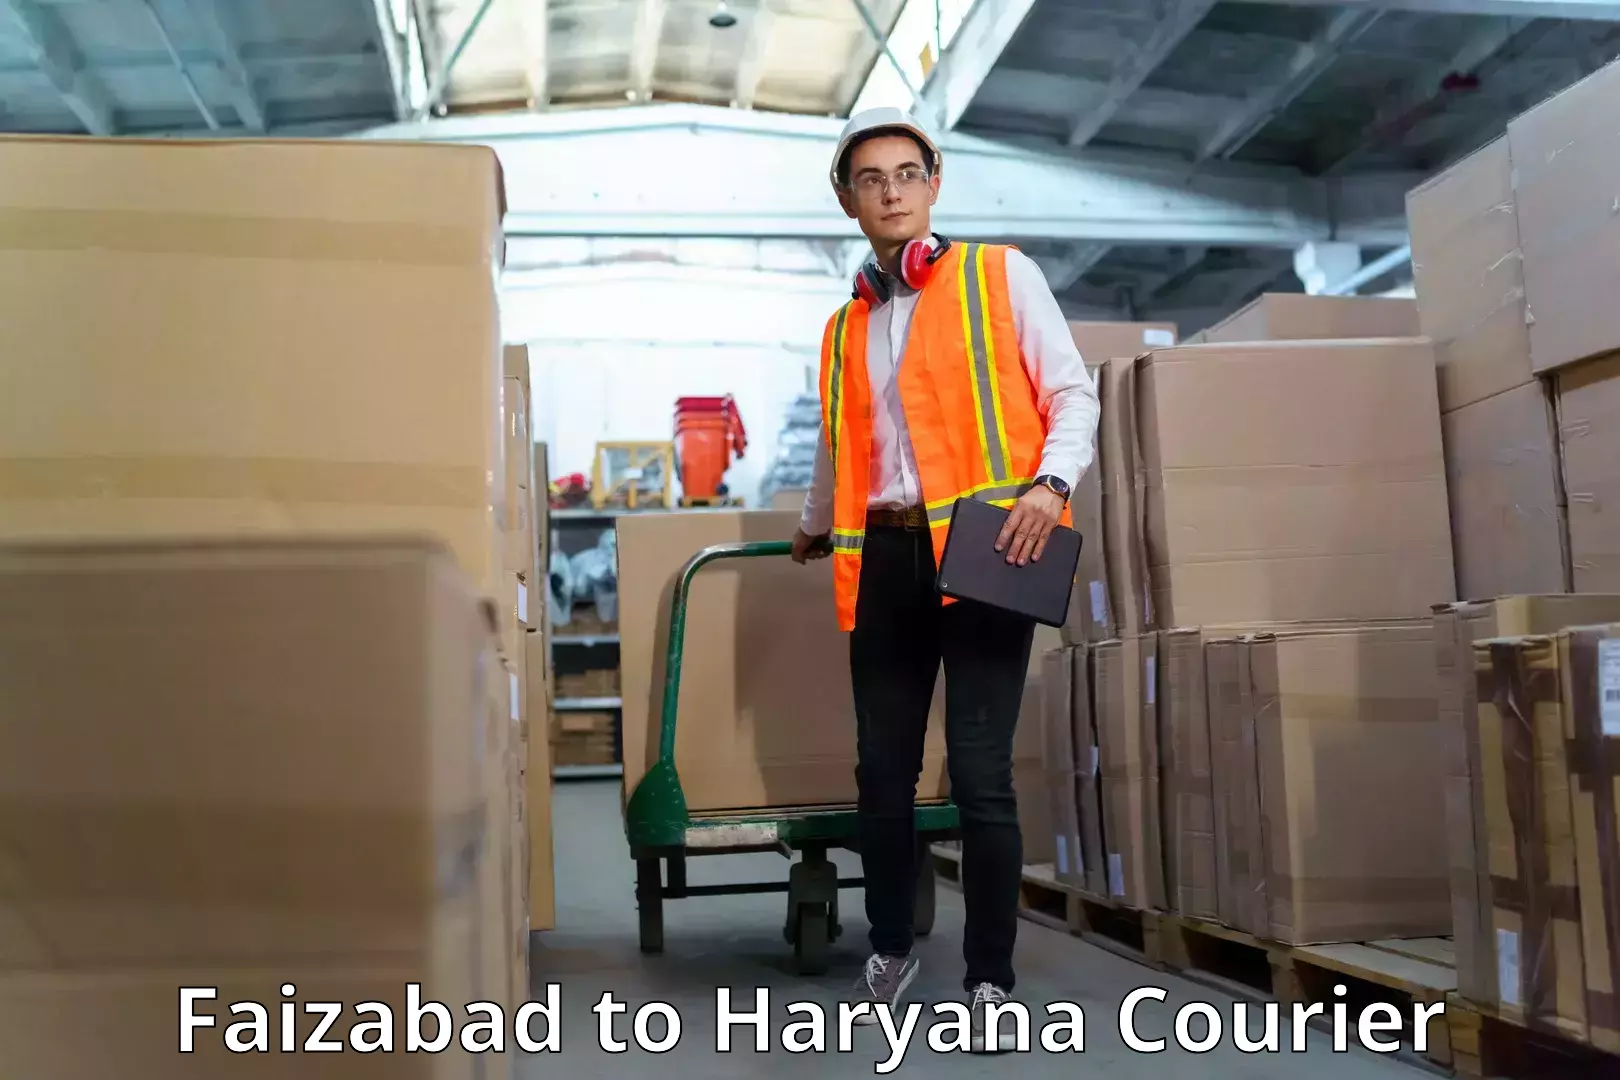 Advanced shipping network Faizabad to Chaudhary Charan Singh Haryana Agricultural University Hisar